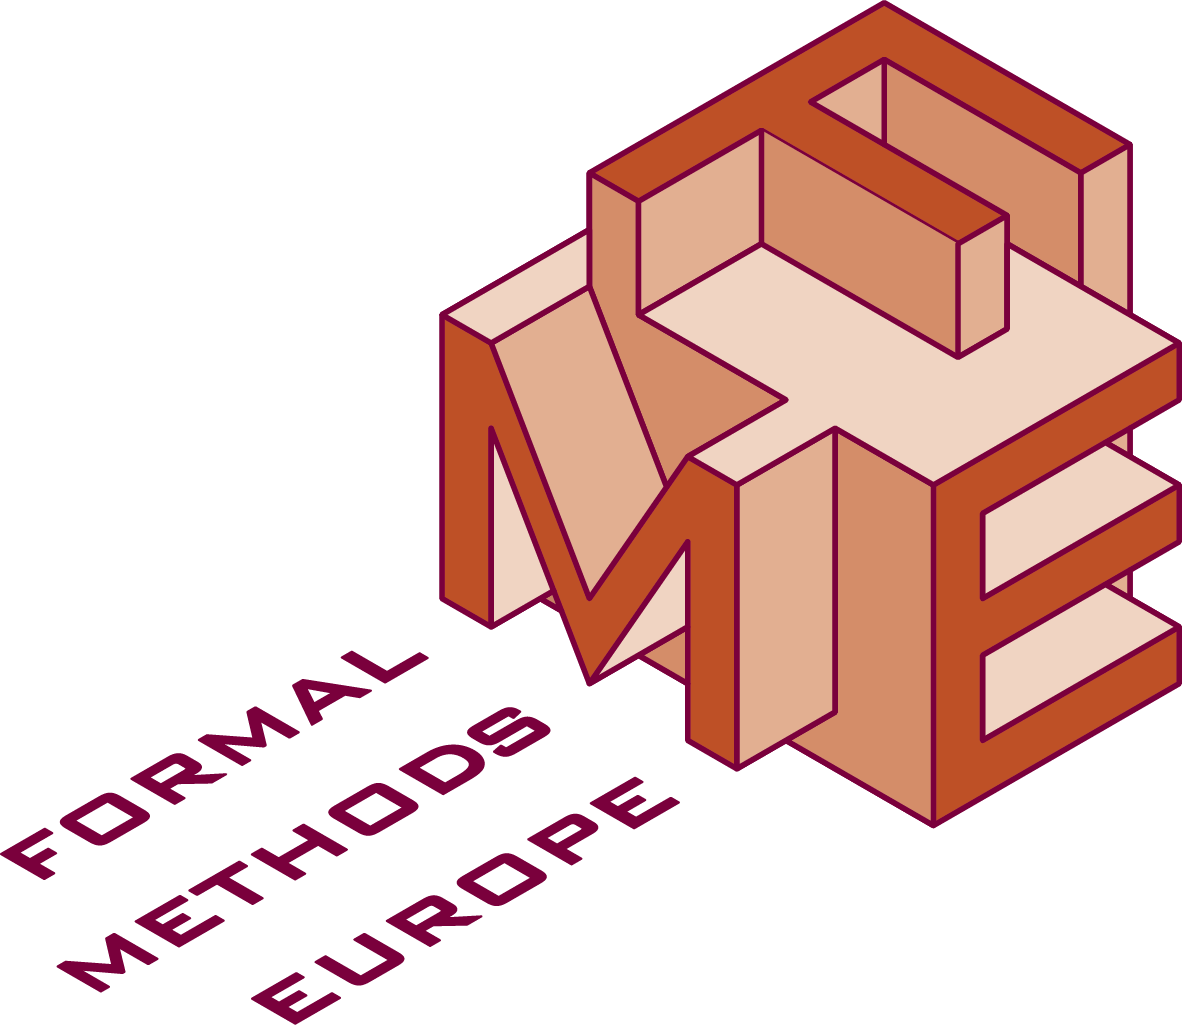 Fme Logo - Formal Methods Europe (1182x1025)